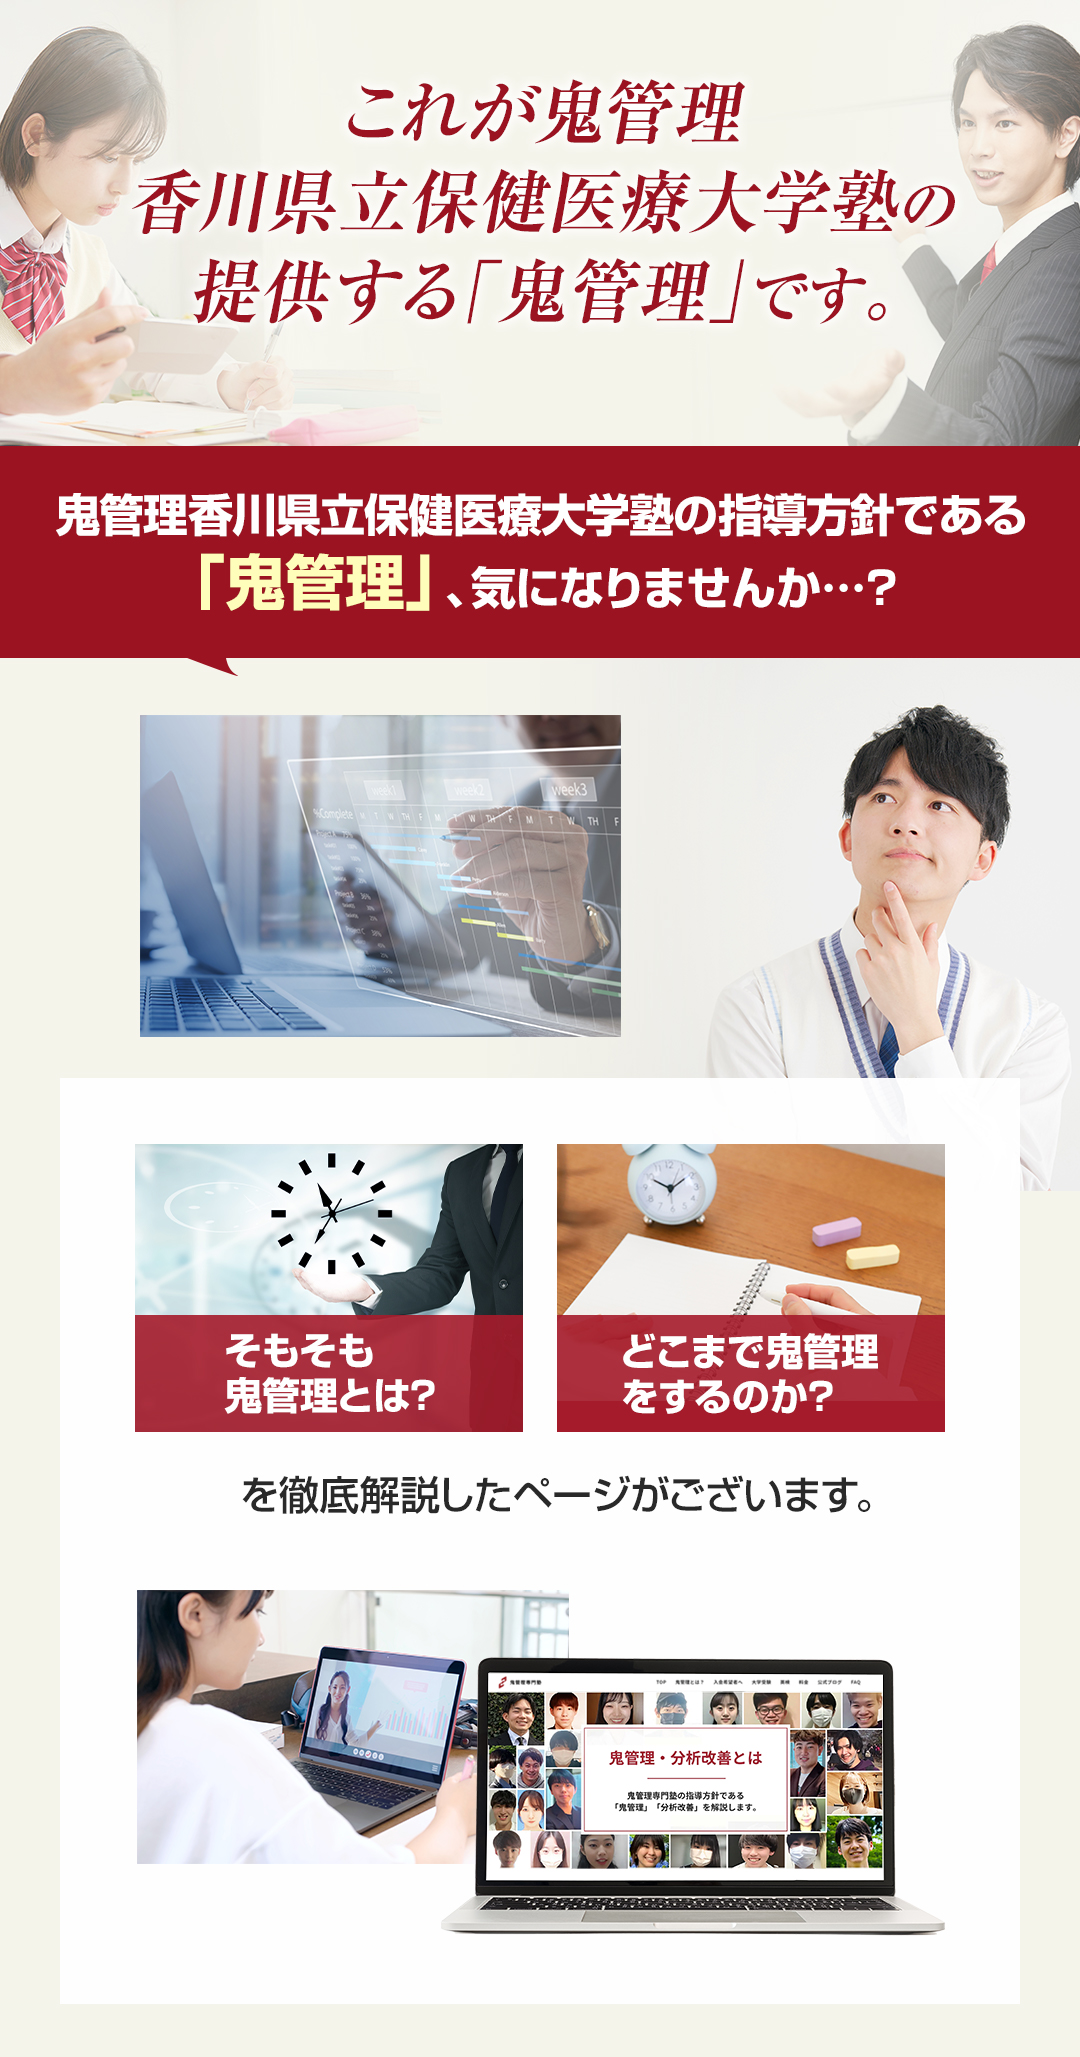 これが鬼管理香川県立保健医療大学校塾の提供する「鬼管理」です